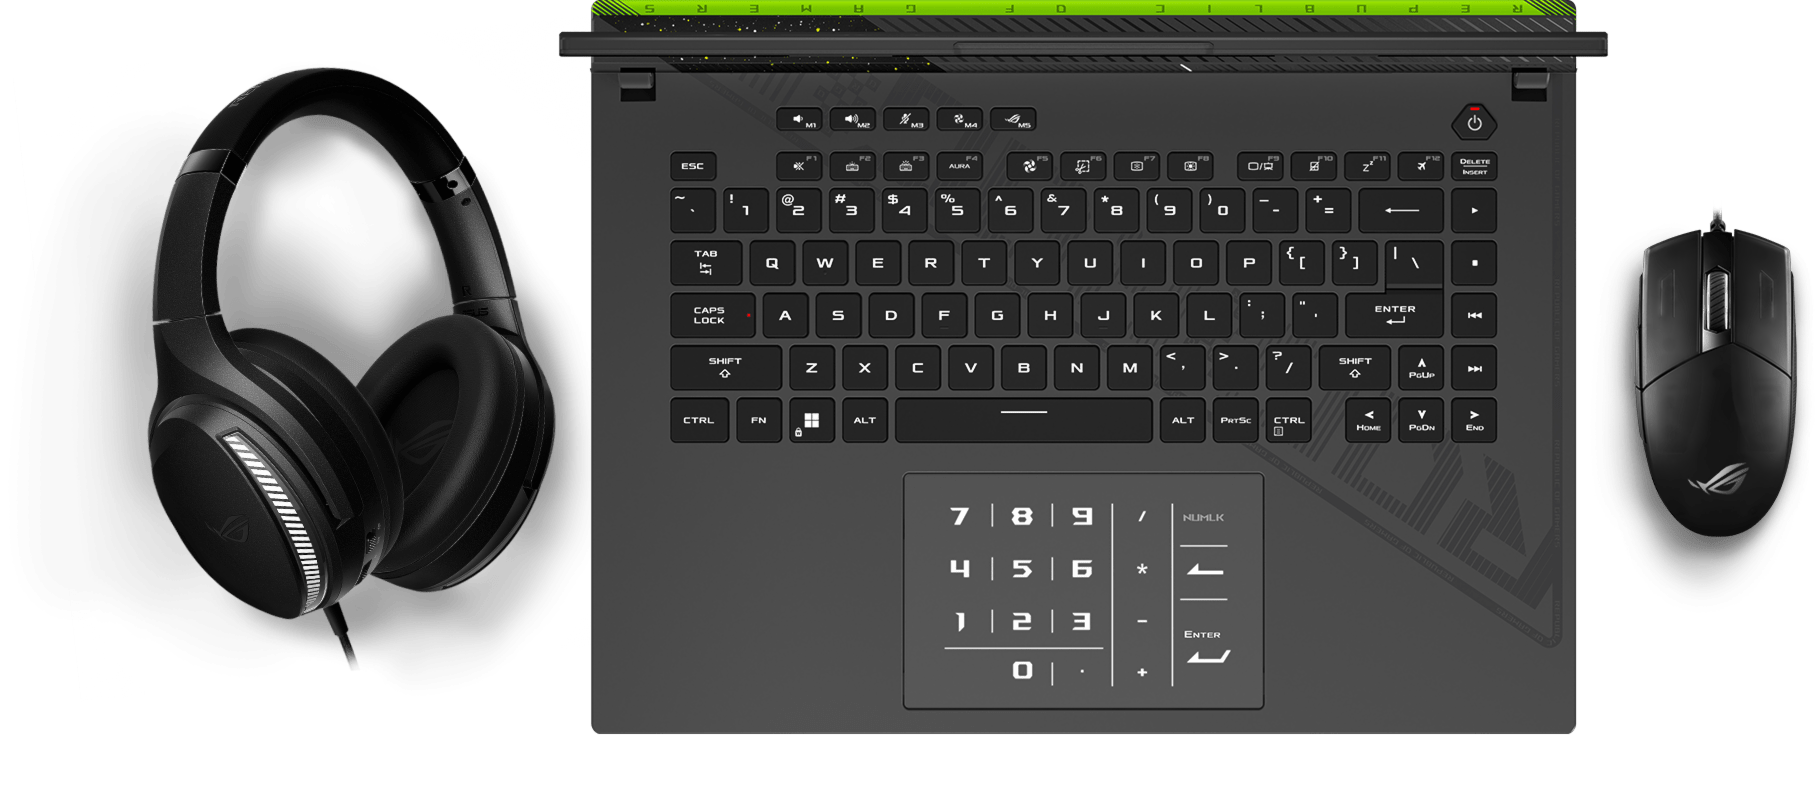 Uma vista do teclado, mostrando os efeitos de iluminação Aura sincronizados com um rato e uns auscultadores.